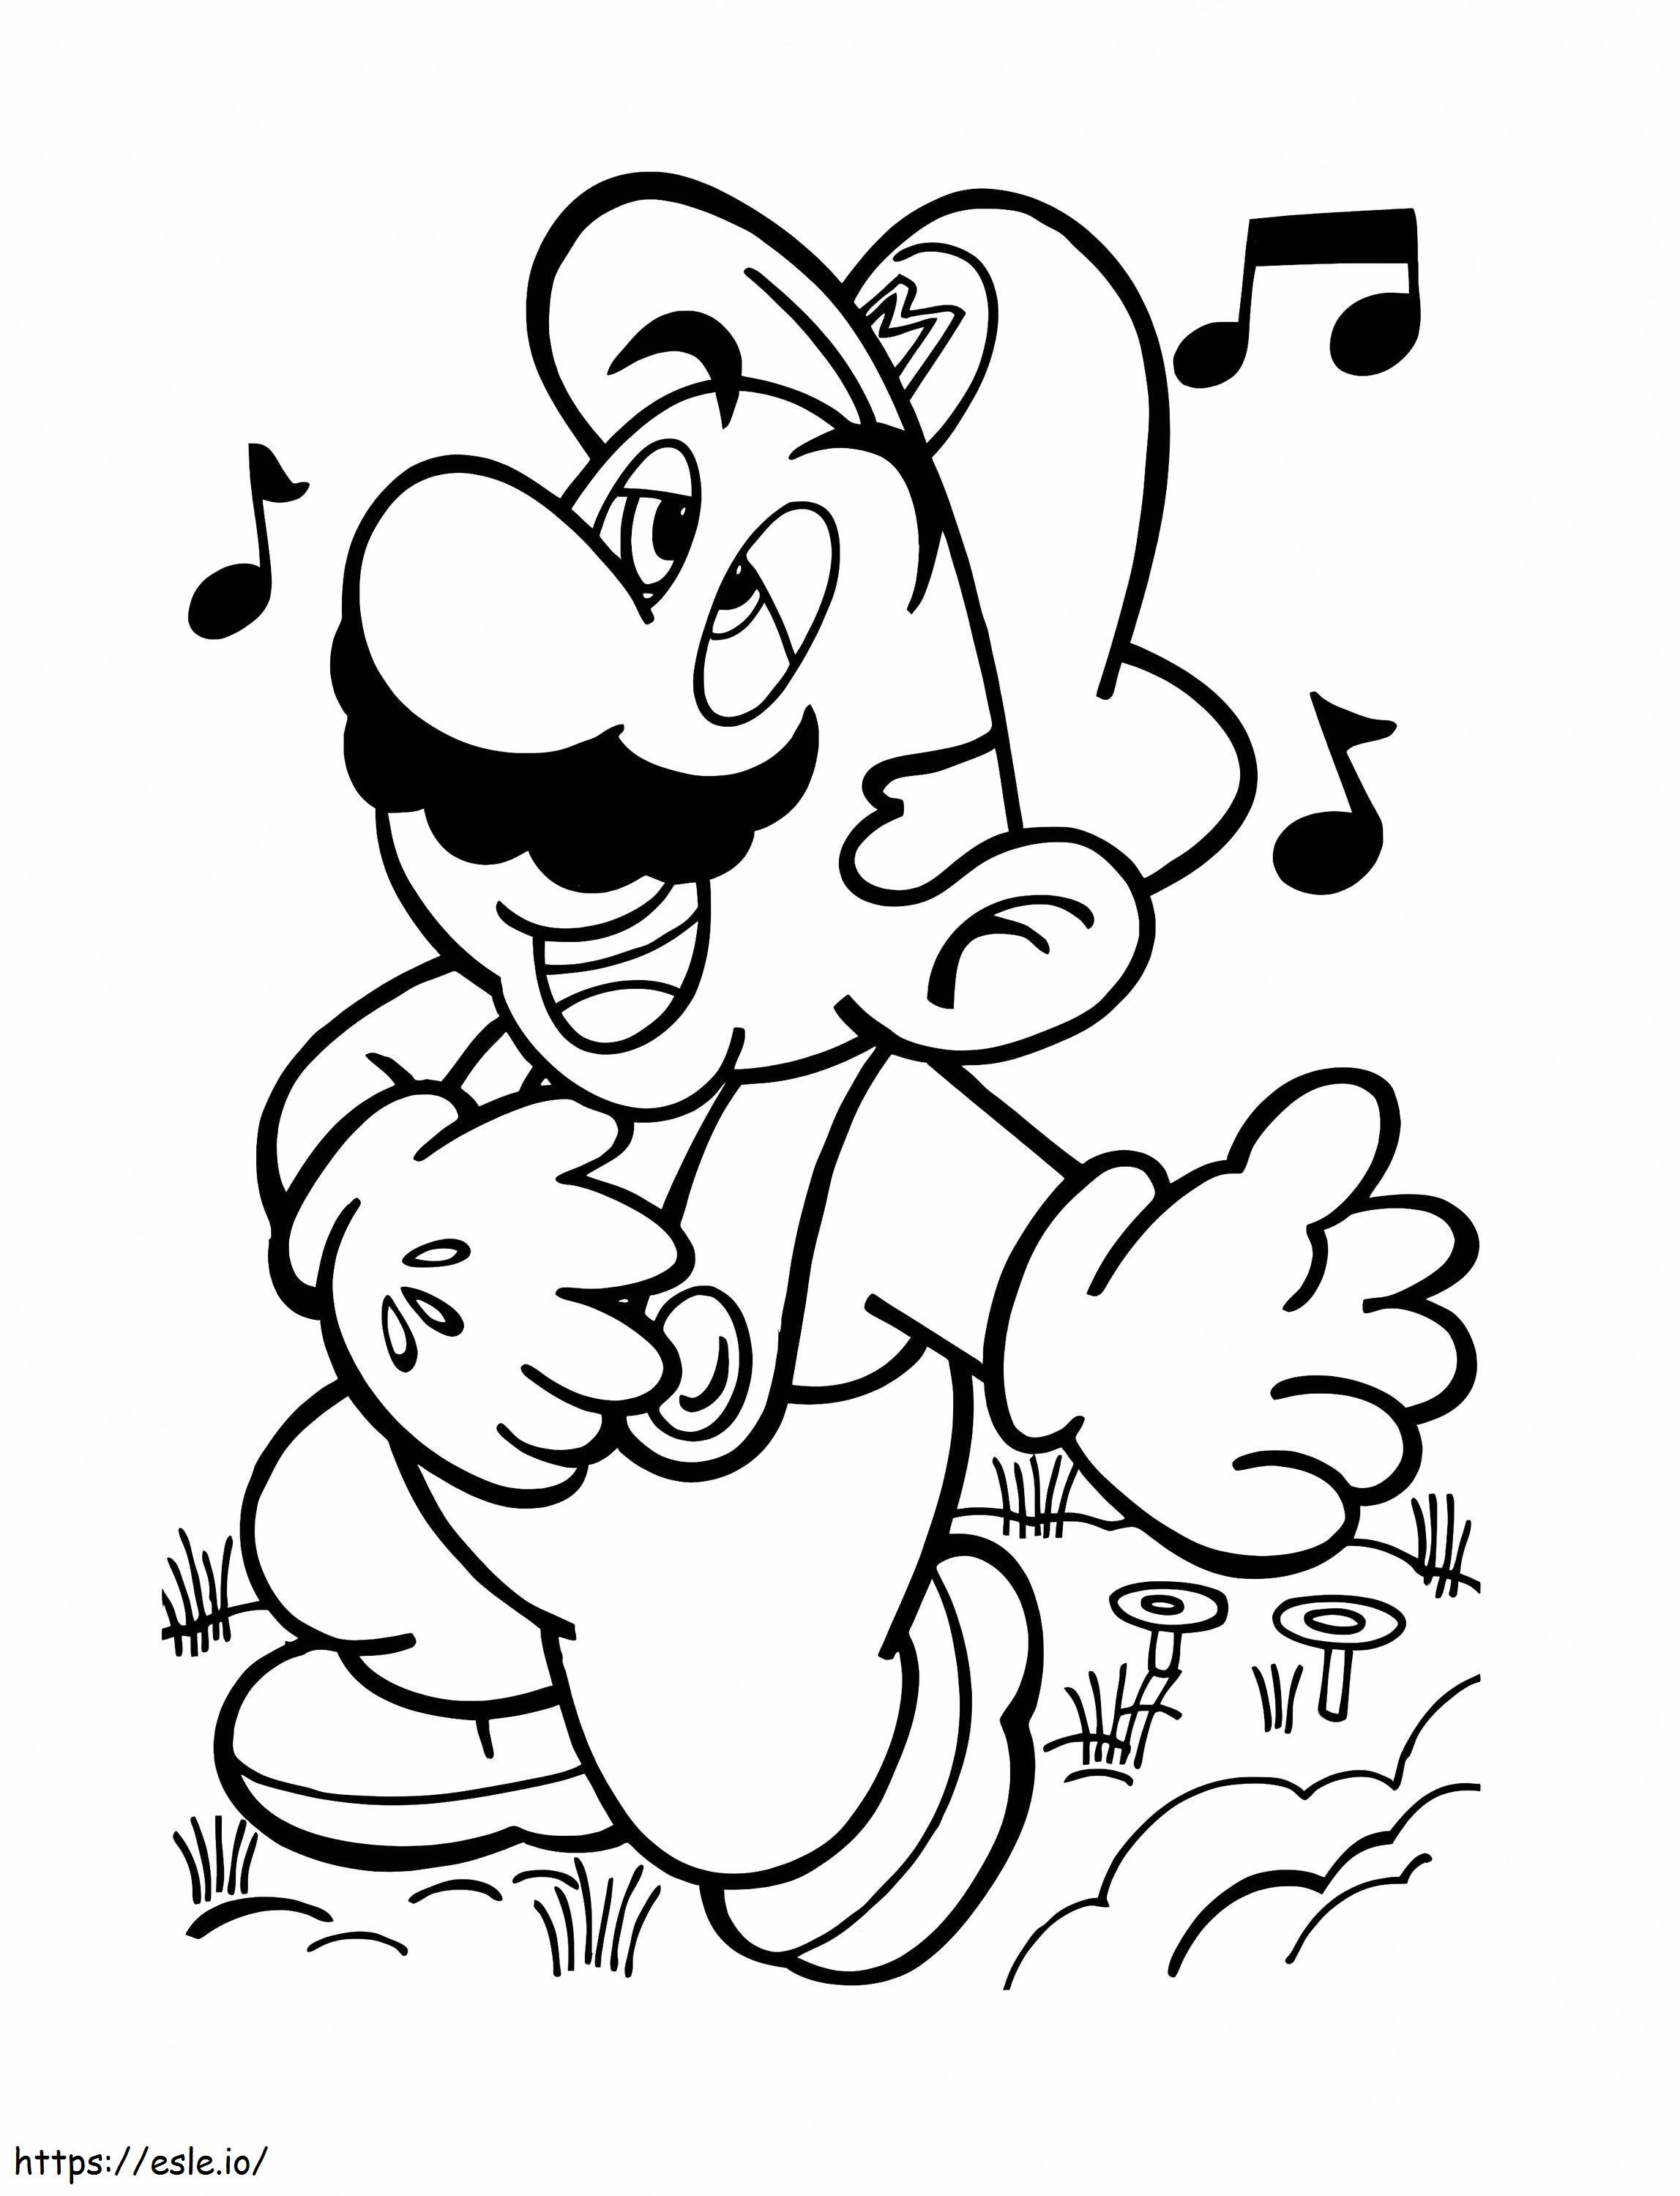 Mario Singing de colorat